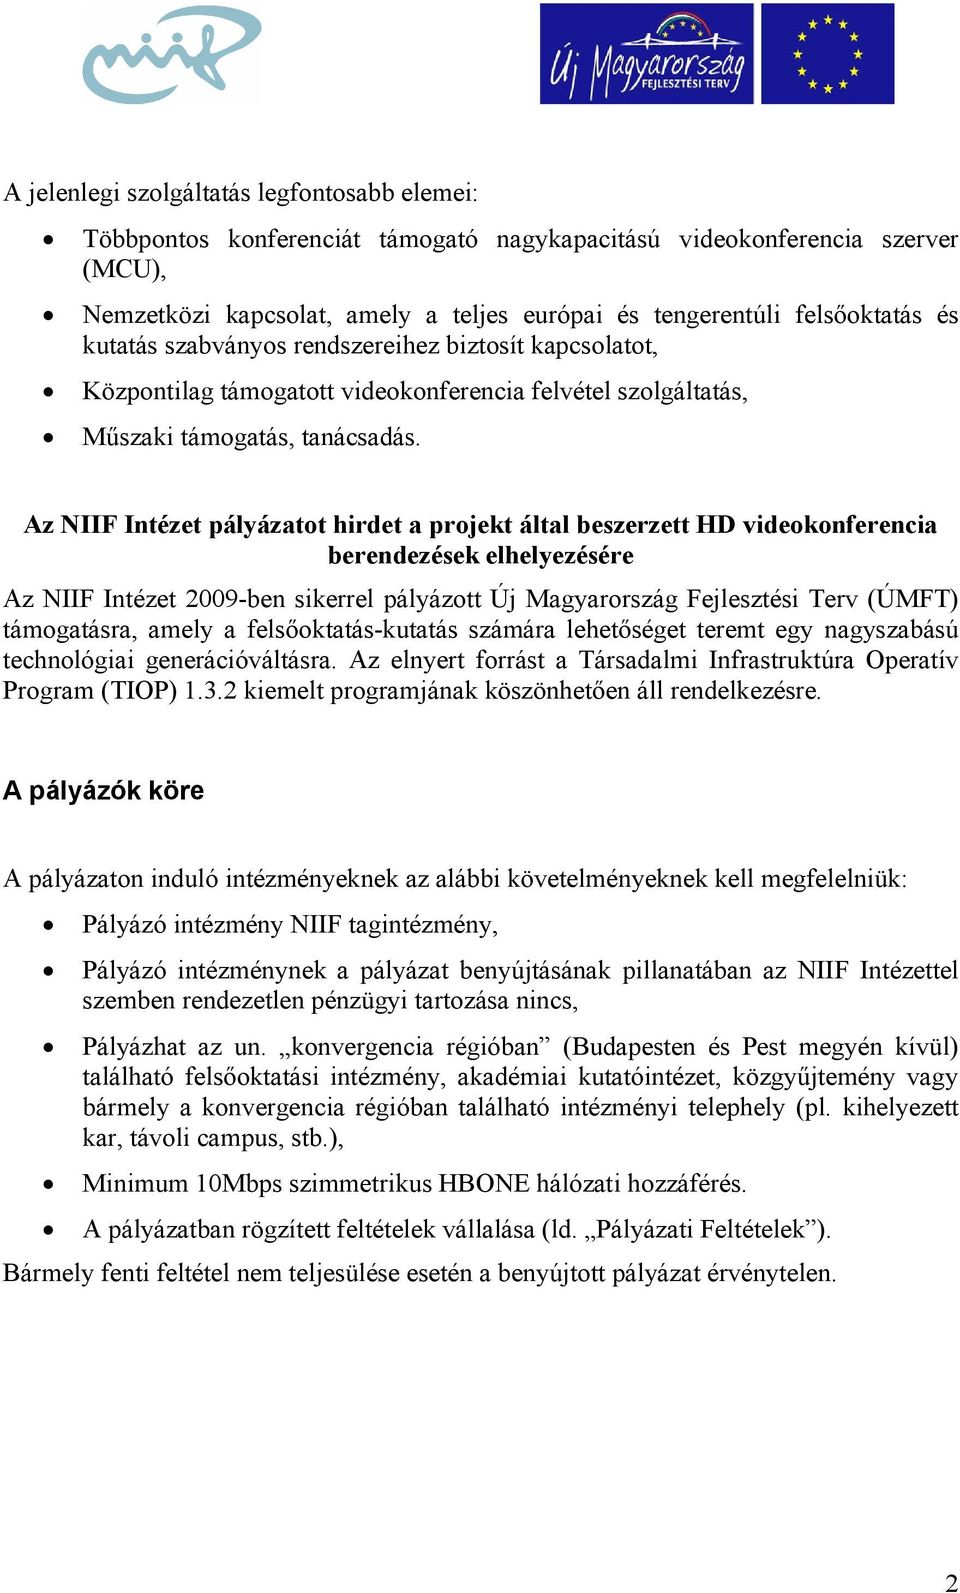 Az IIF Intézet pályázatot hirdet a projekt által beszerzett HD videokonferencia berendezések elhelyezésére Az NIIF Intézet 2009-ben sikerrel pályázott Új Magyarország Fejlesztési Terv (ÚMFT)